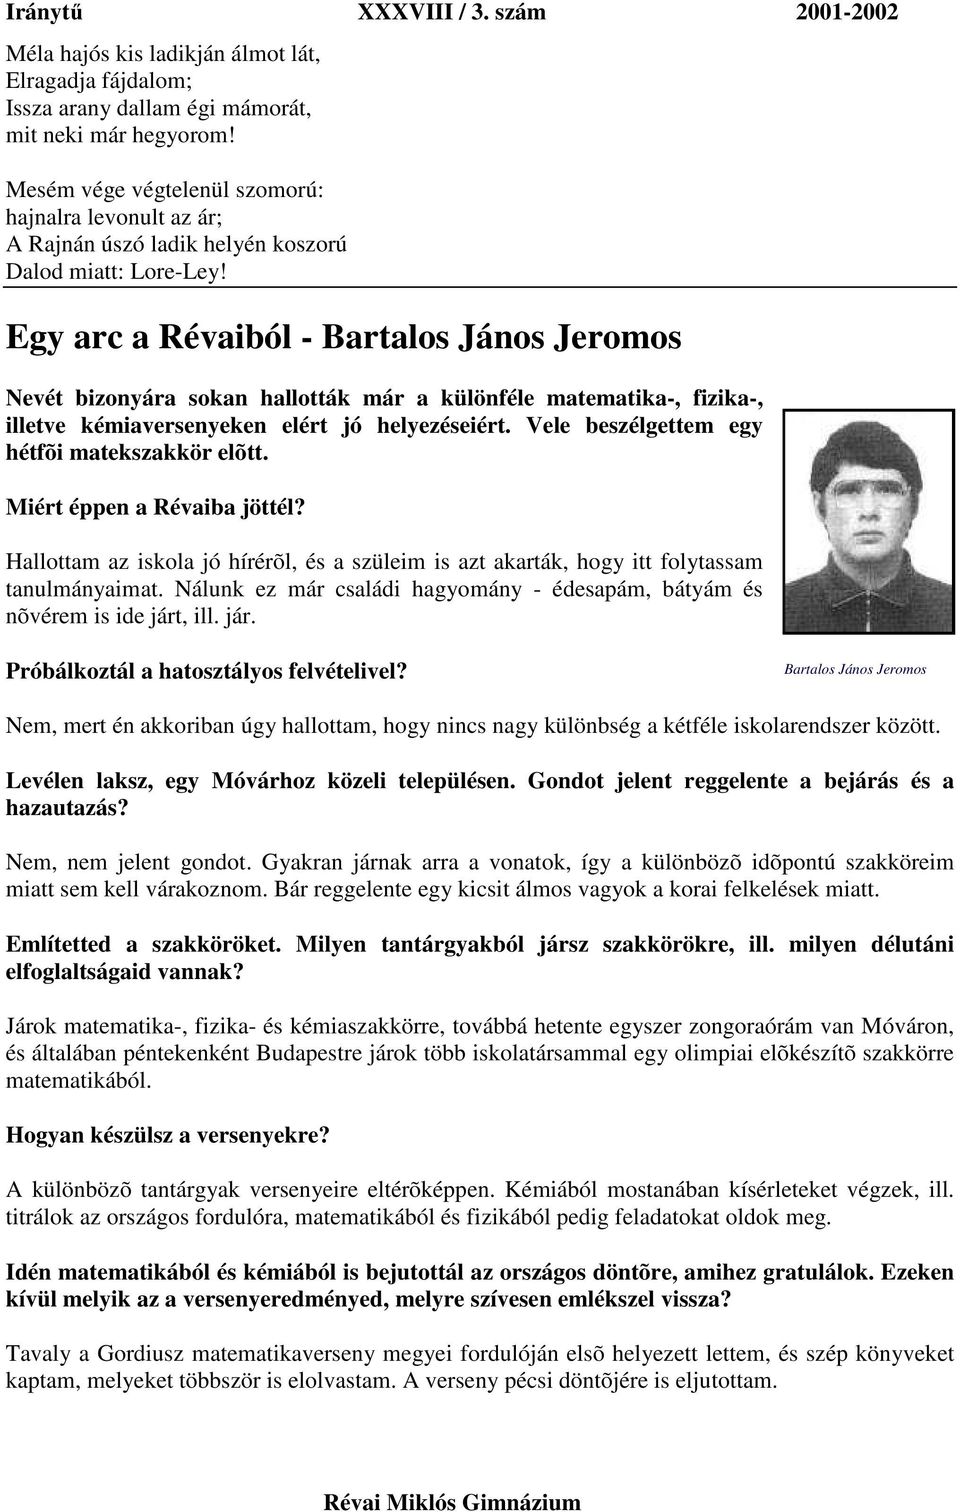 Egy arc a Révaiból - Bartalos János Jeromos Nevét bizonyára sokan hallották már a különféle matematika-, fizika-, illetve kémiaversenyeken elért jó helyezéseiért.